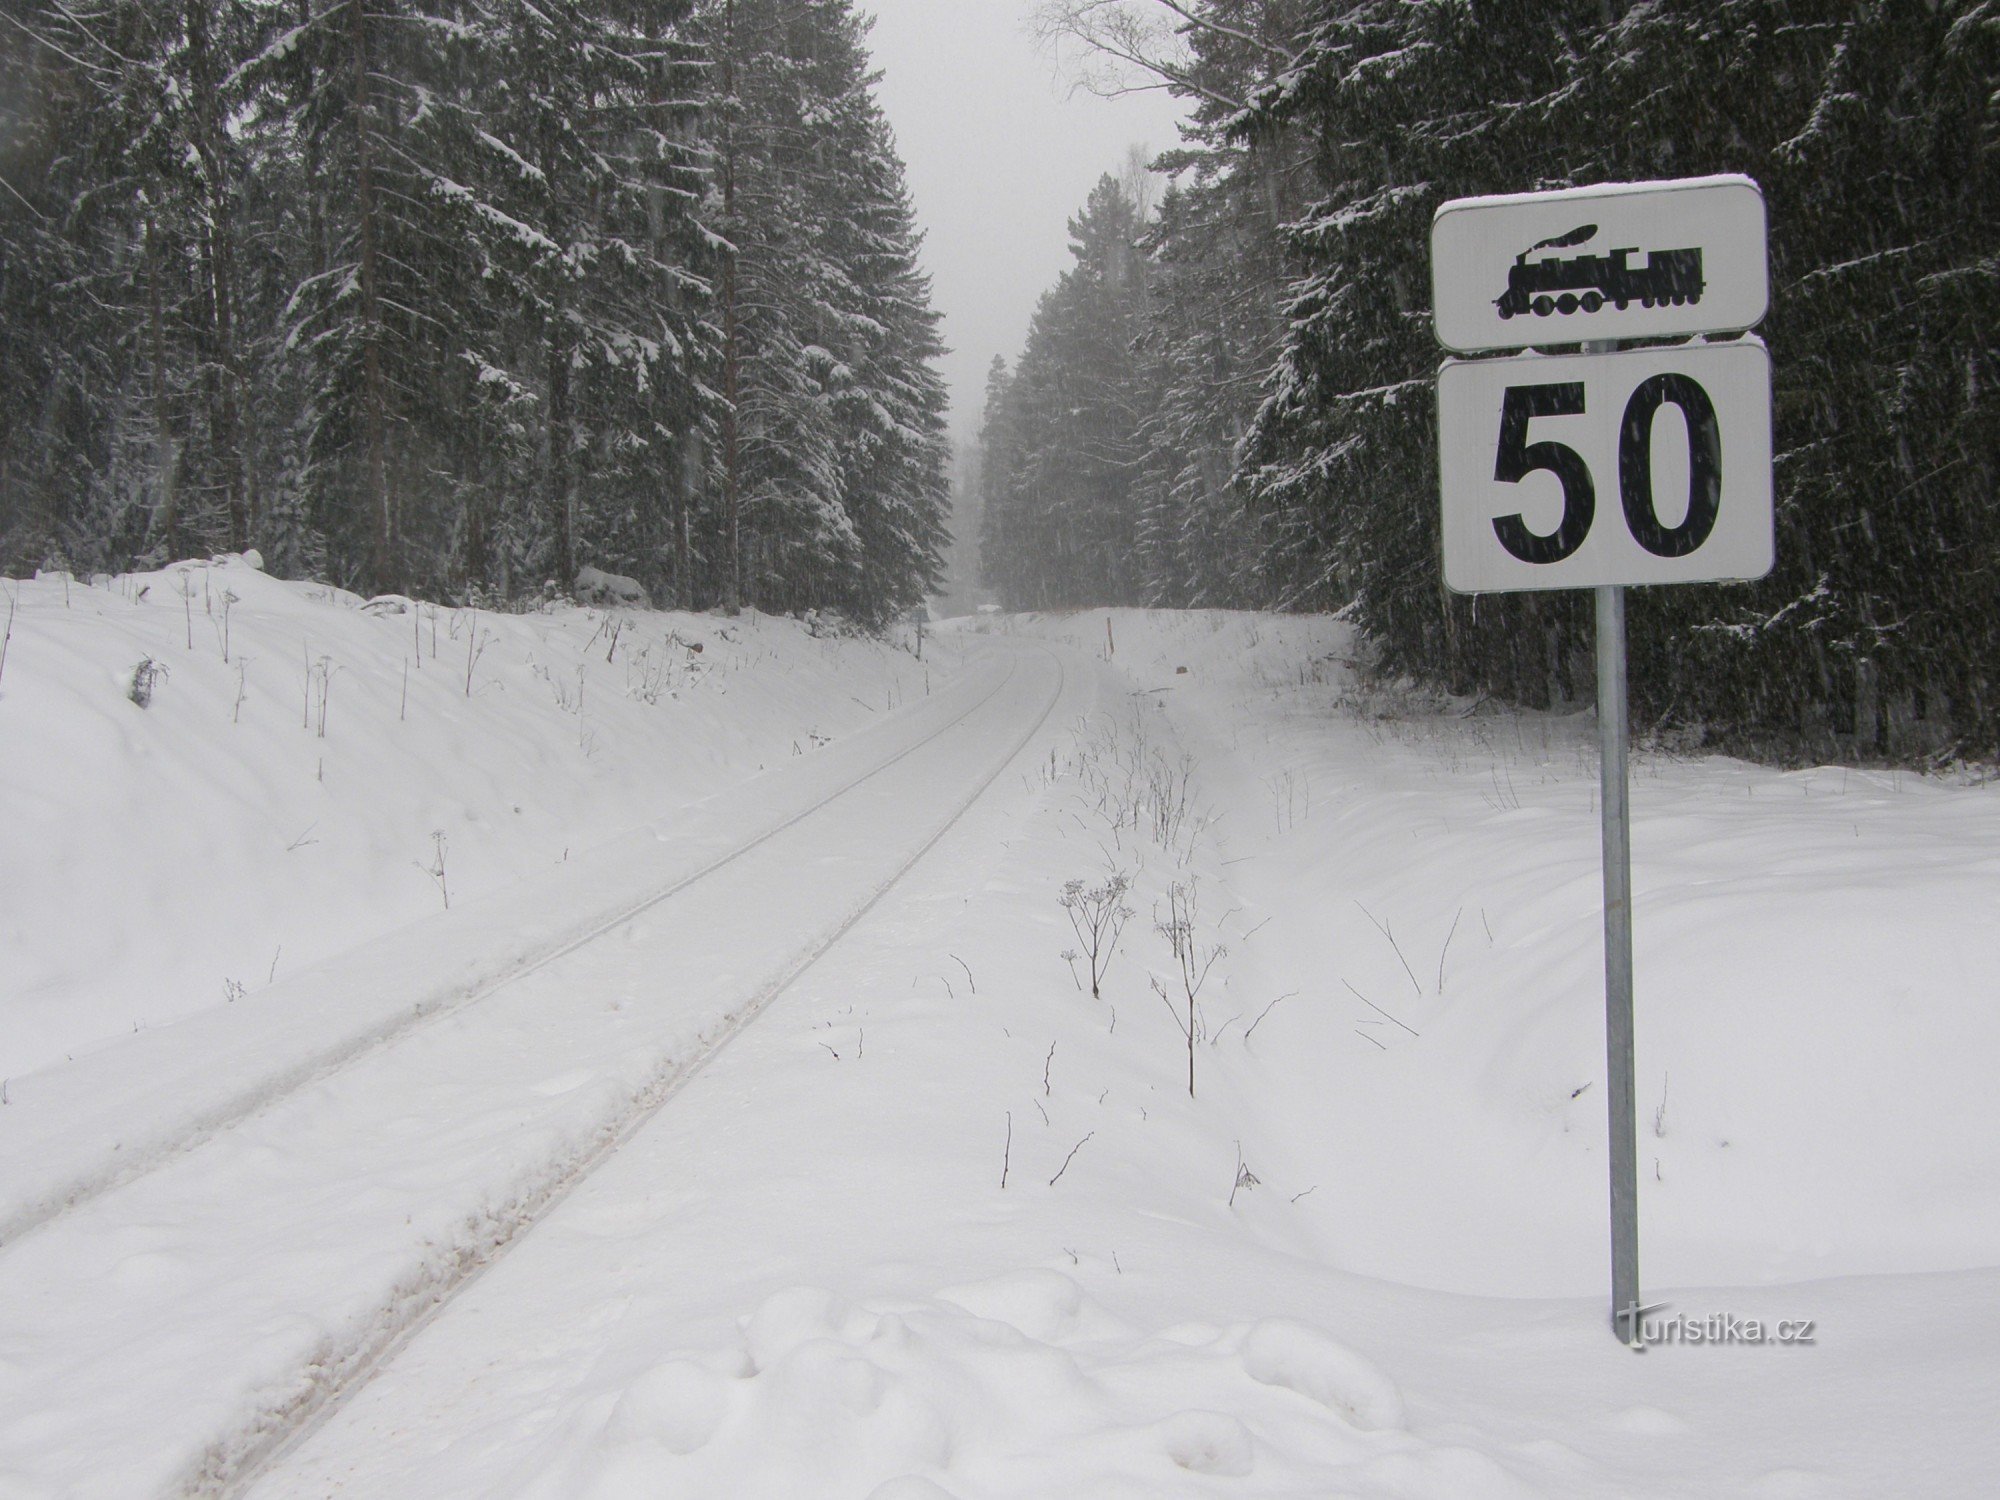 Las pistas se dirigen a través de la nieve hacia la frontera bávara.